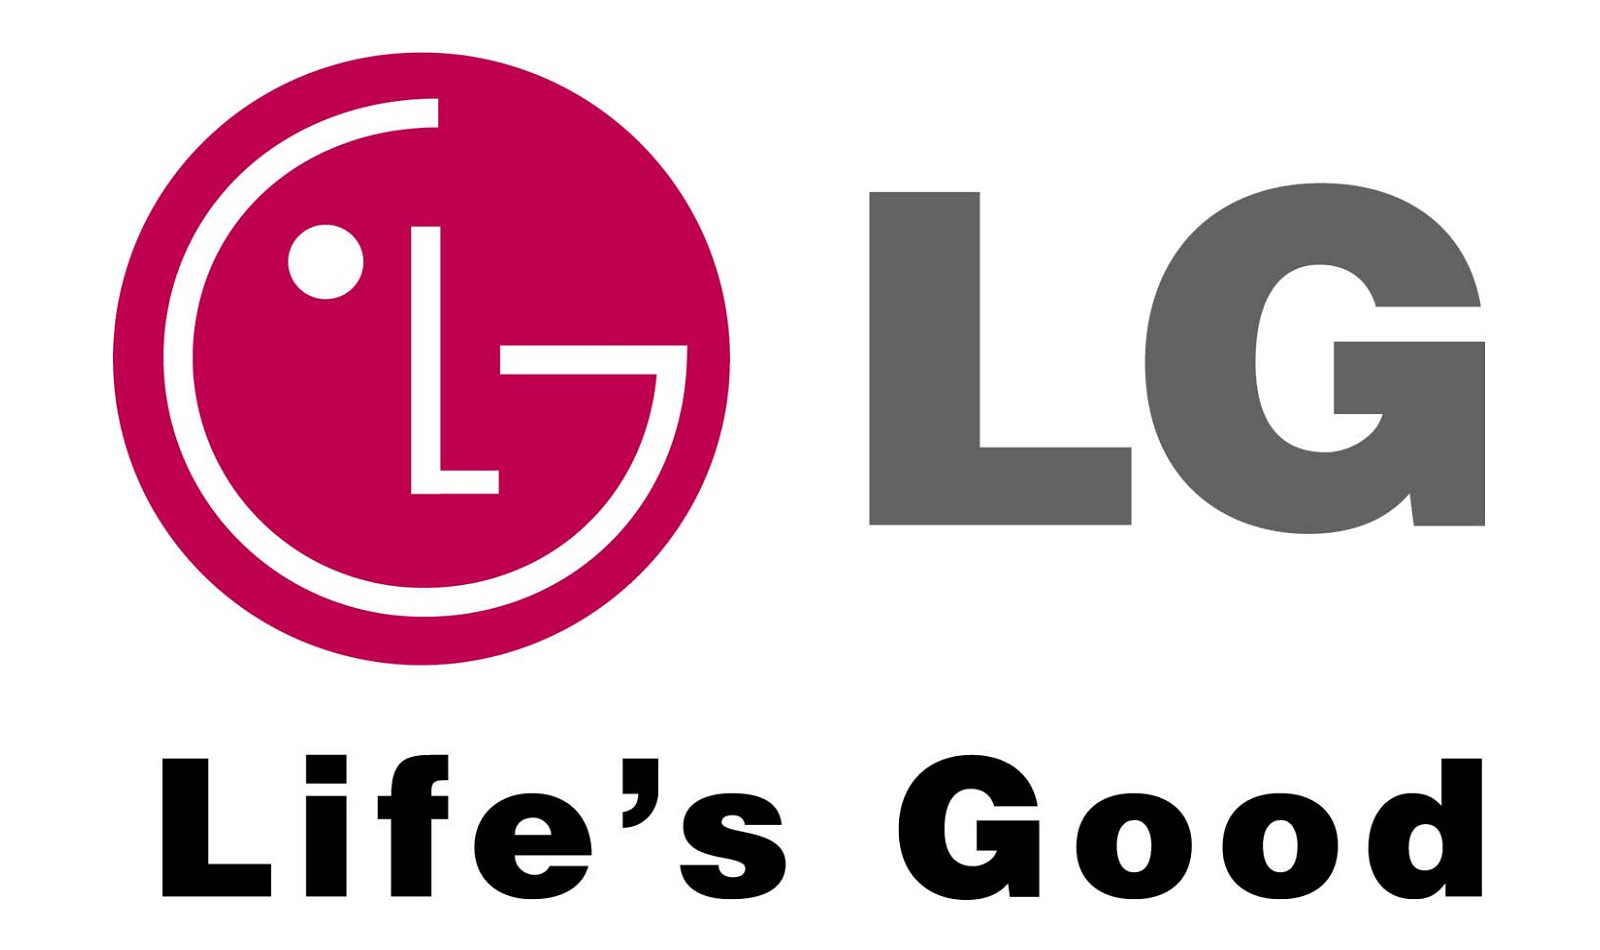 Lg Logos